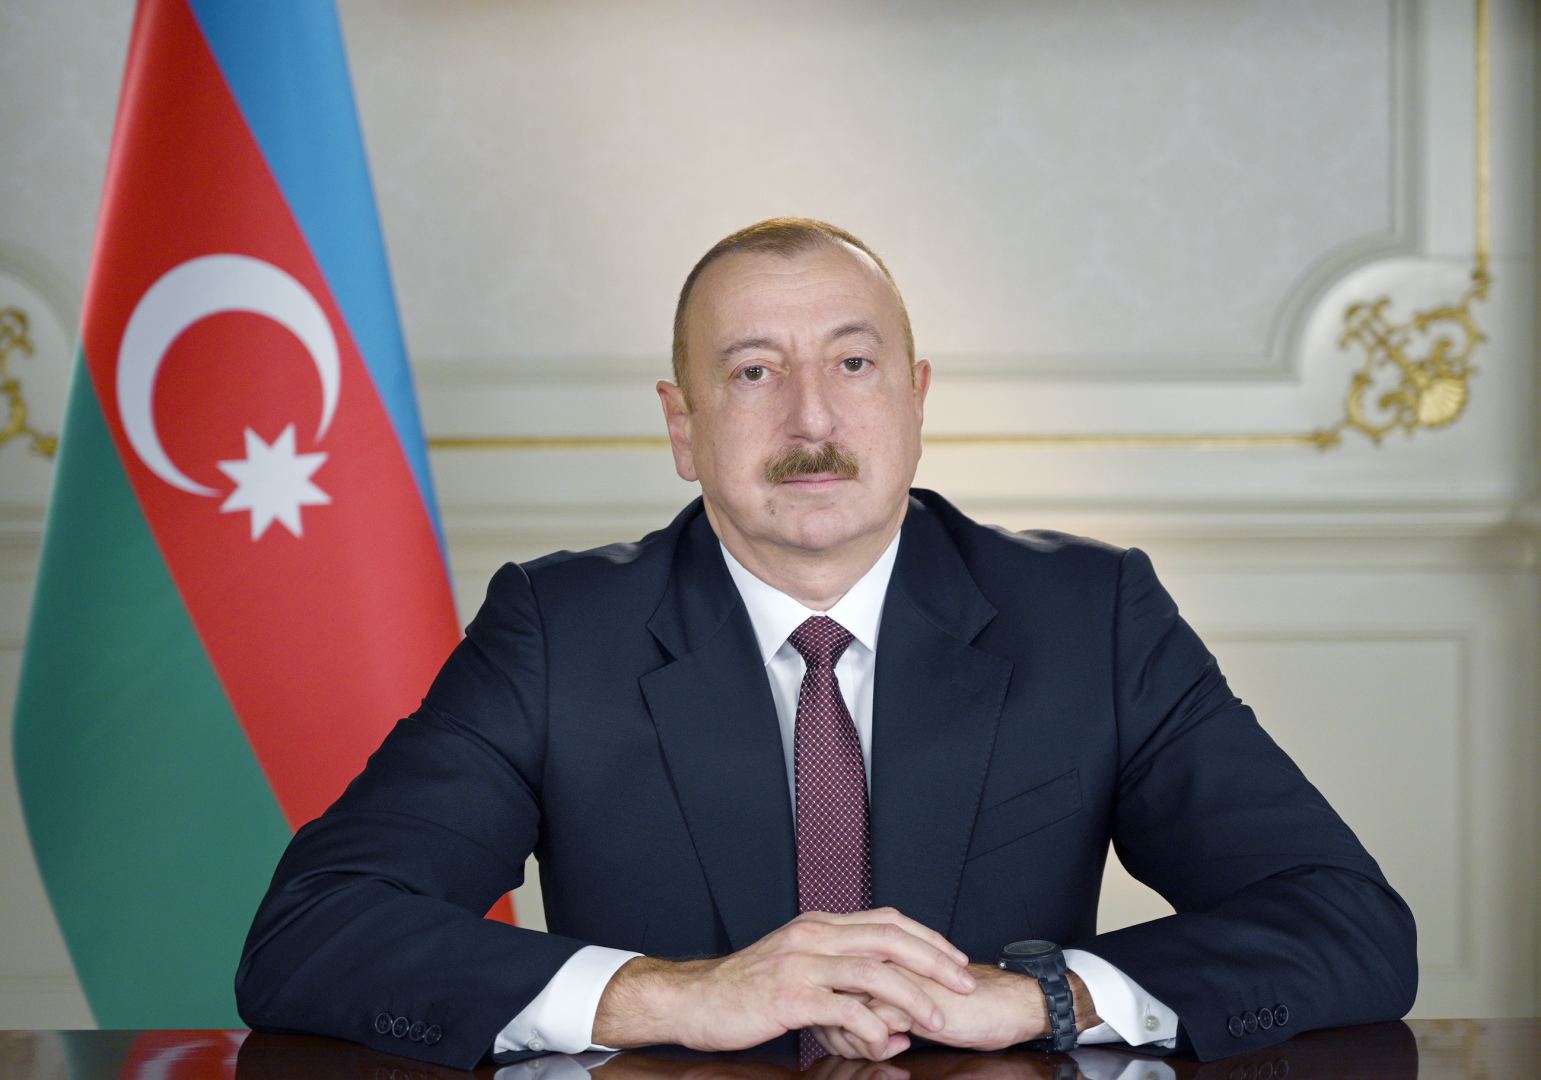 Назначен новый посол Азербайджана в Аргентине - Распоряжение